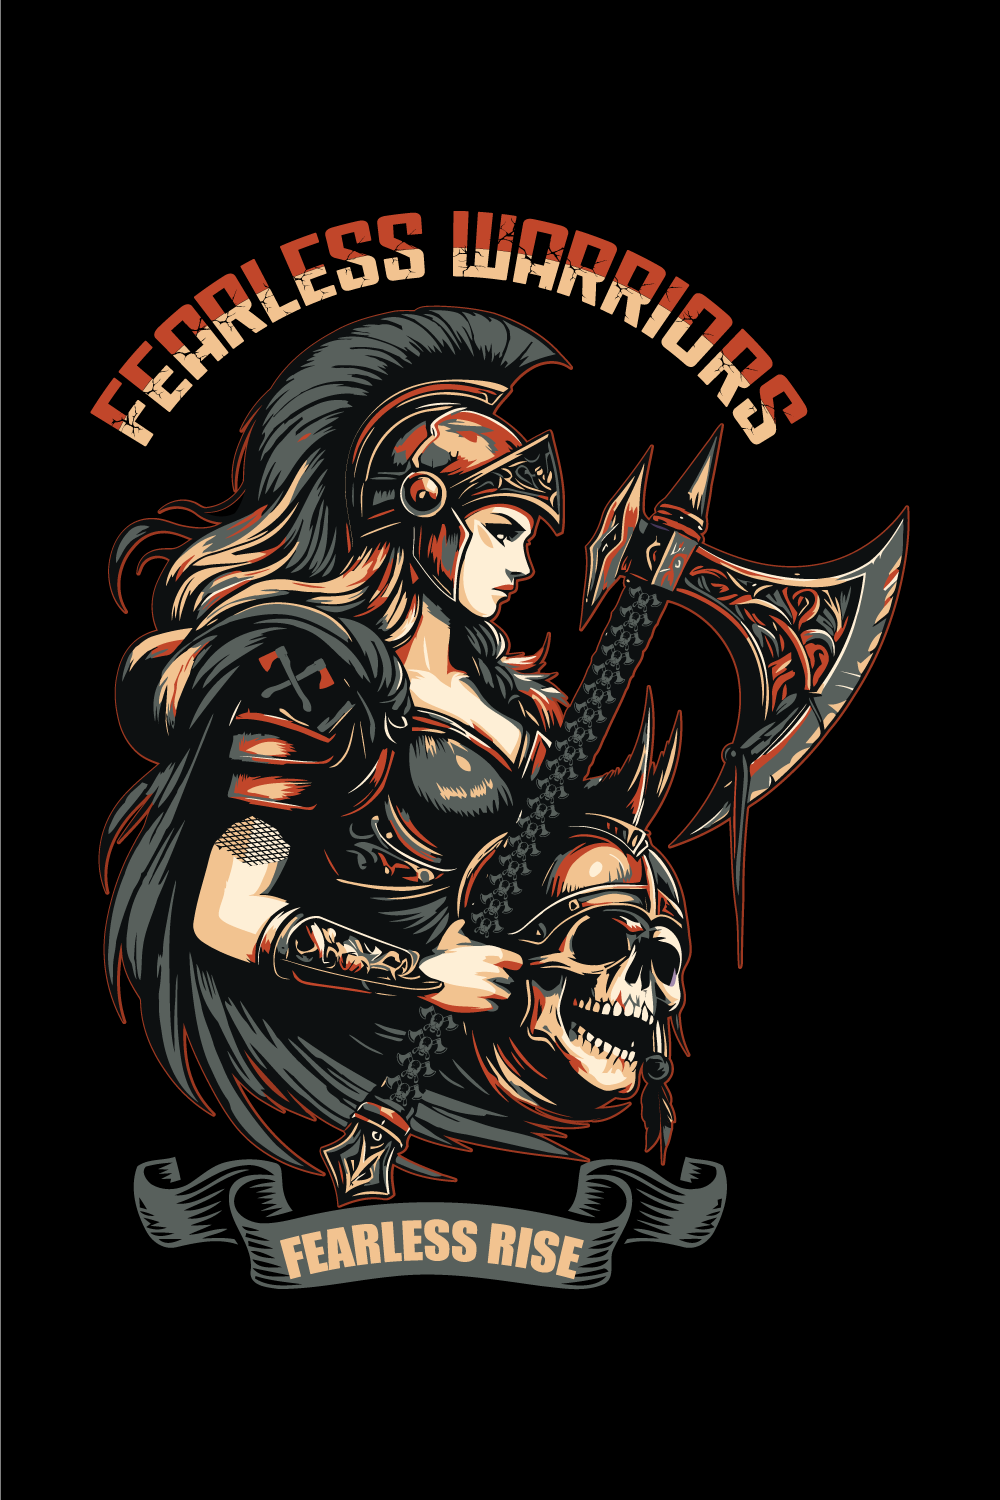 T-Shirt Desgin, Fareless Warriors Fareless Rise pinterest preview image.